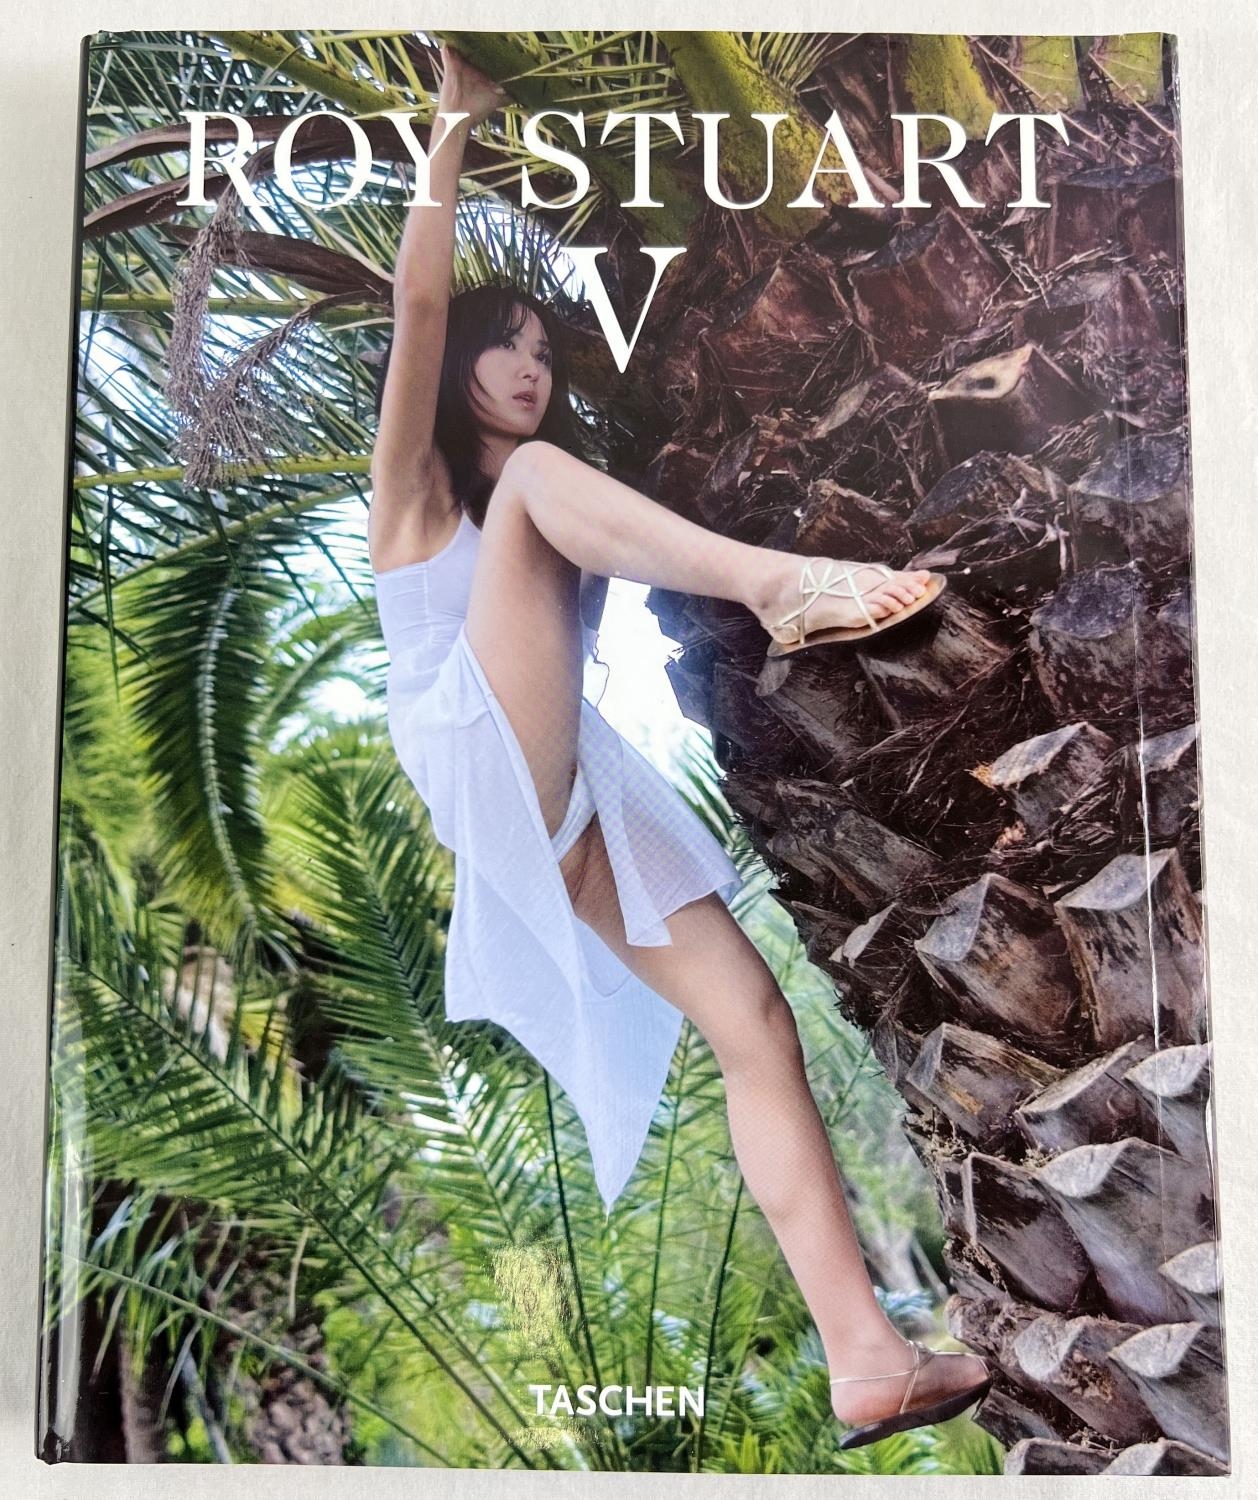 Roy Stuart V - large hardback book from Taschen, 2008. Complete 